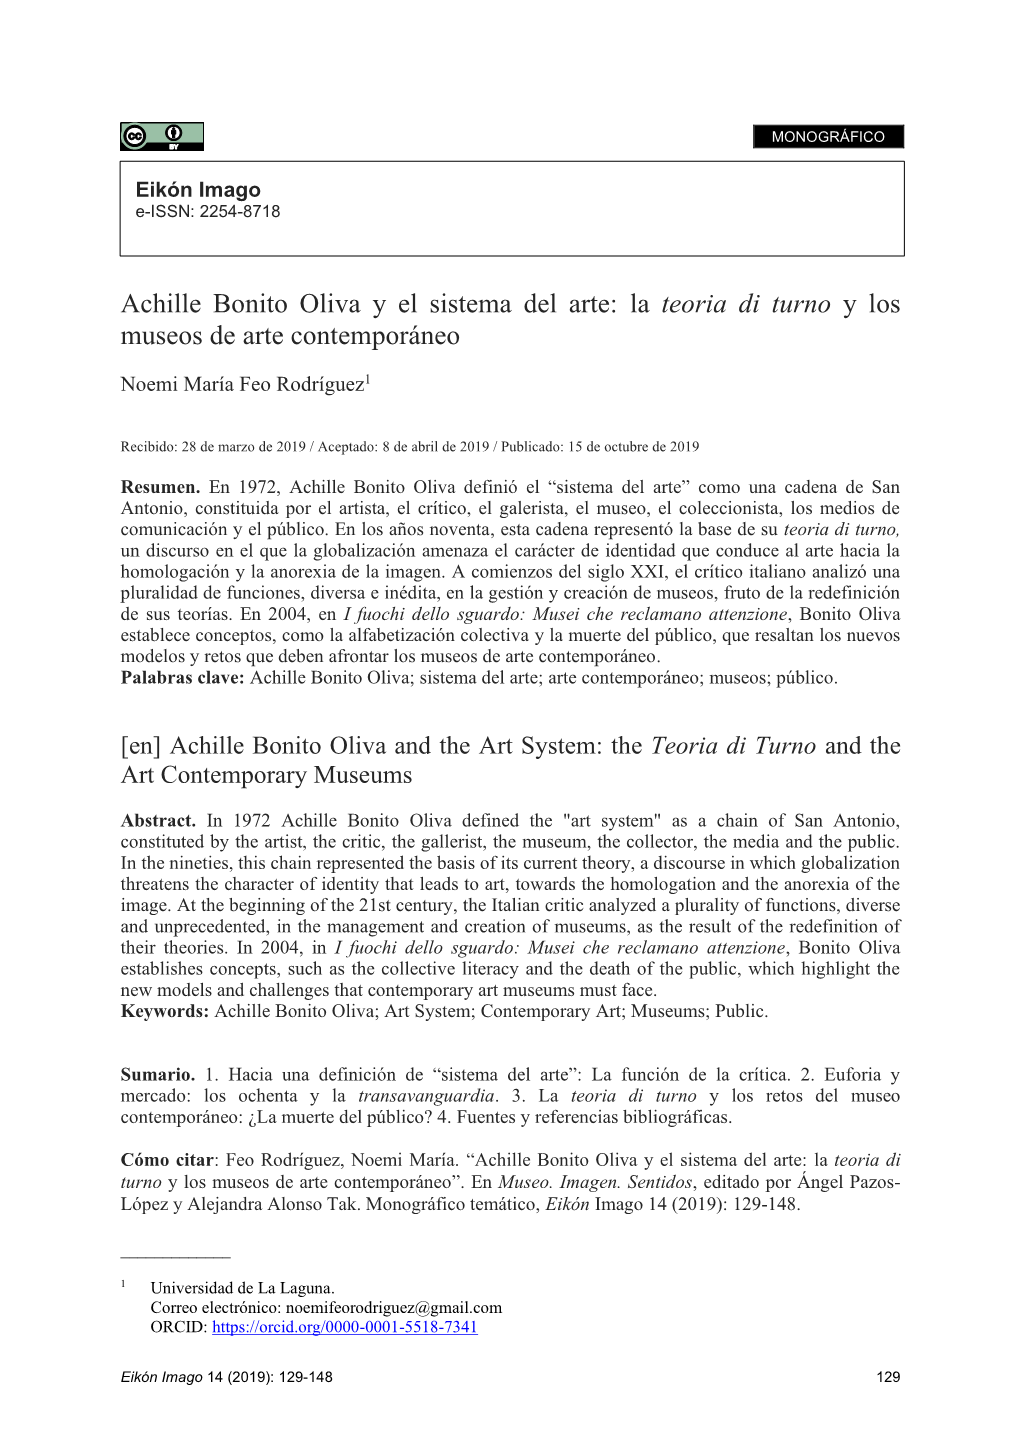 Achille Bonito Oliva Y El Sistema Del Arte: La Teoria Di Turno Y Los Museos De Arte Contemporáneo